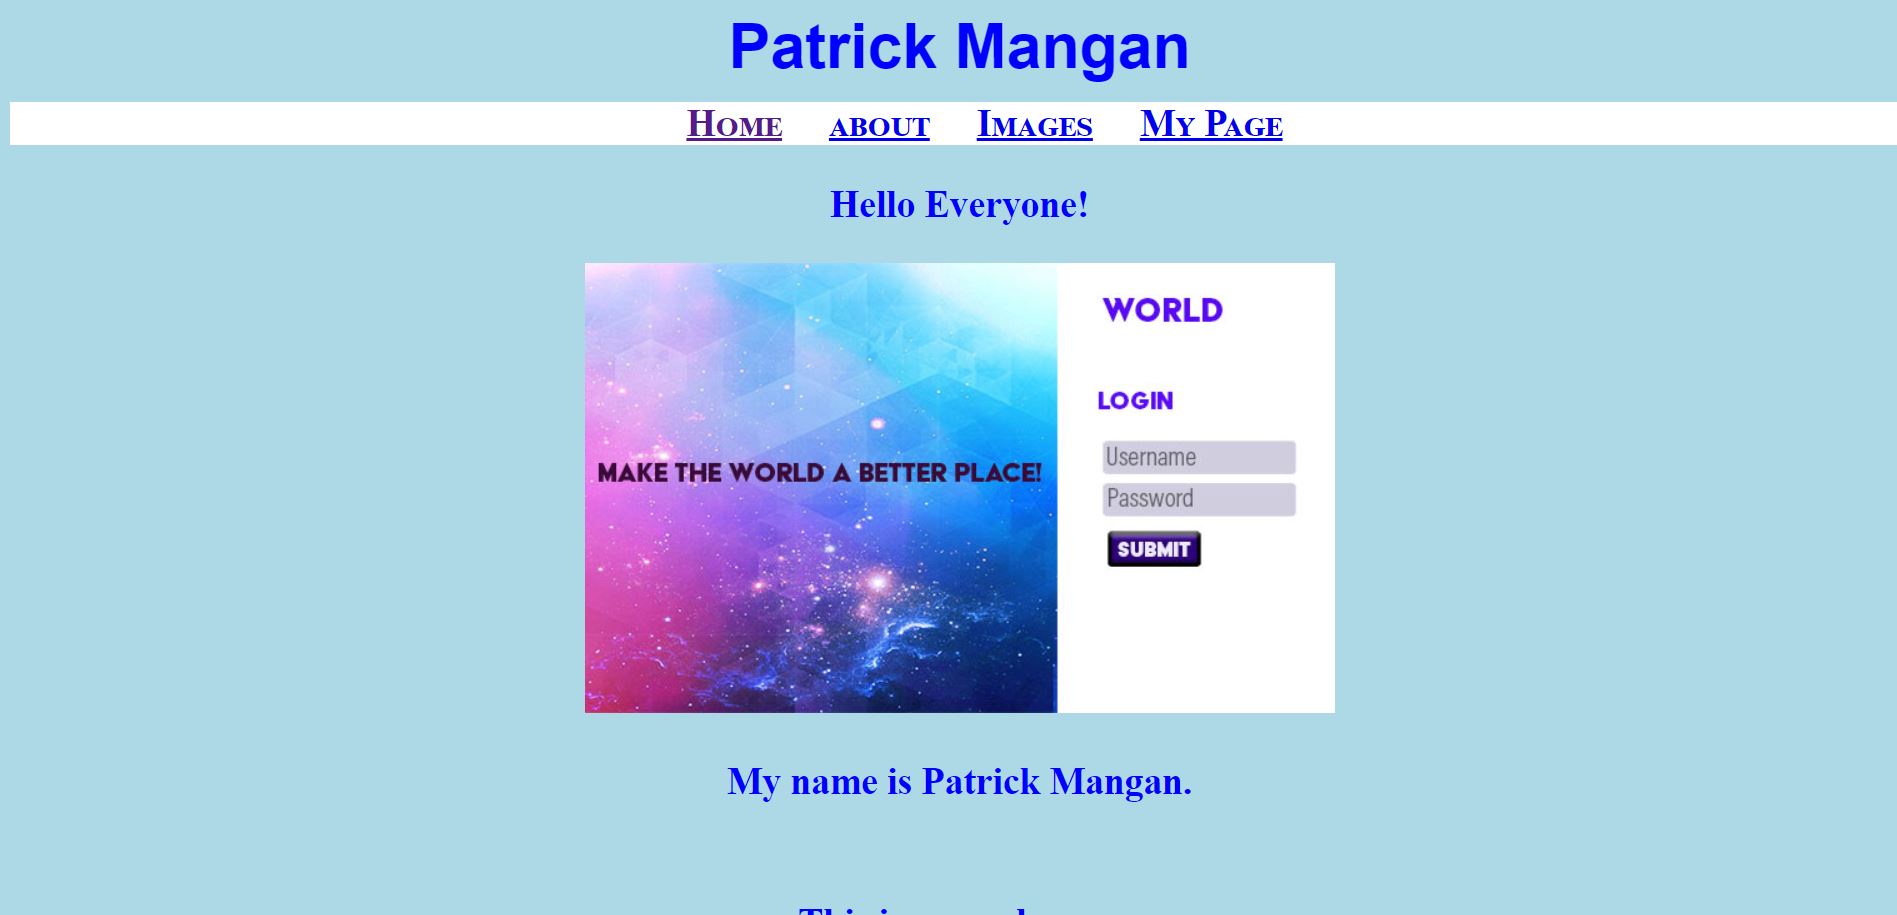 Patrick Mangan's Page